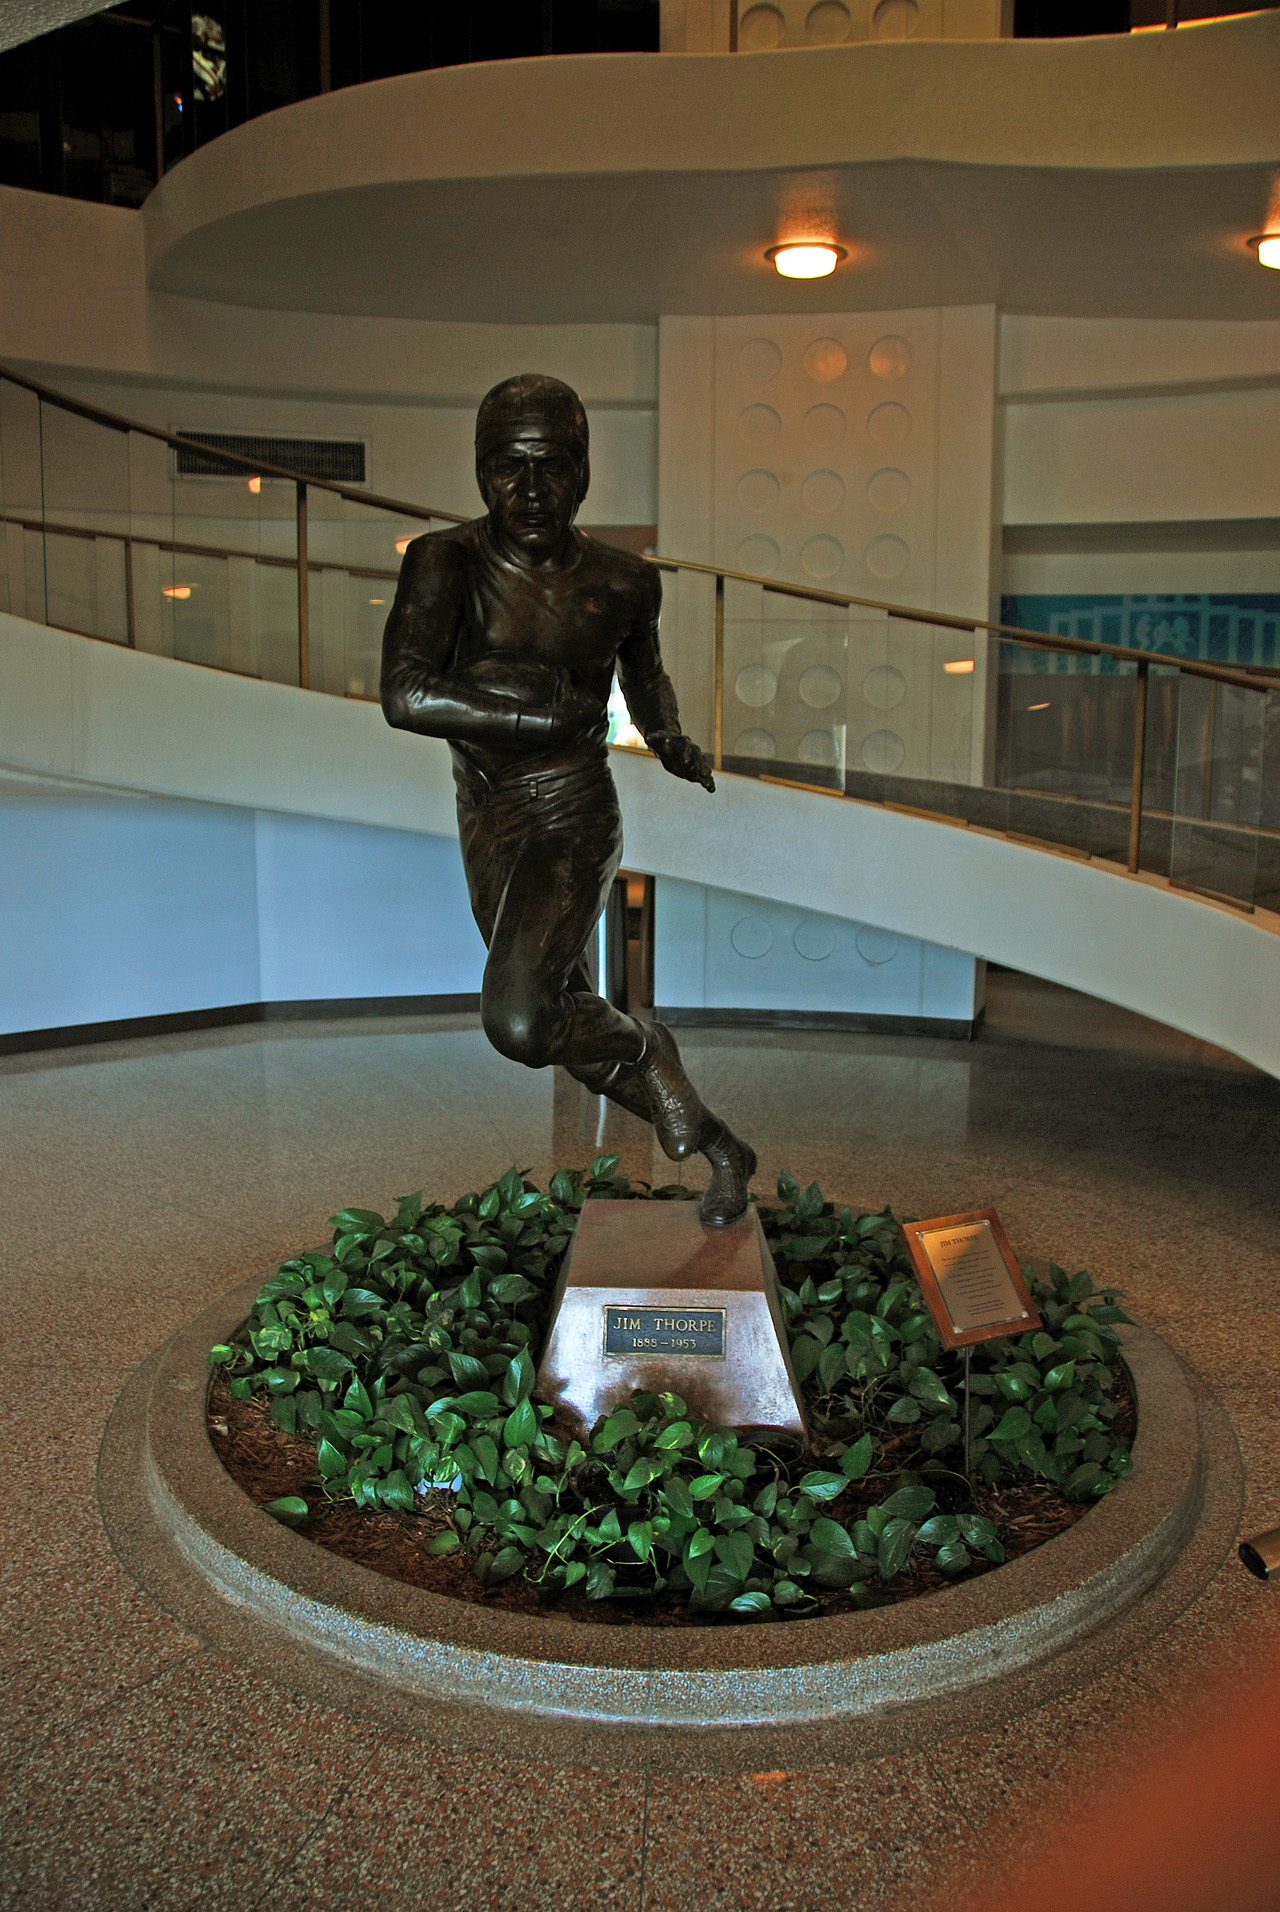 2012-04-23, 003, Jim Thorpe